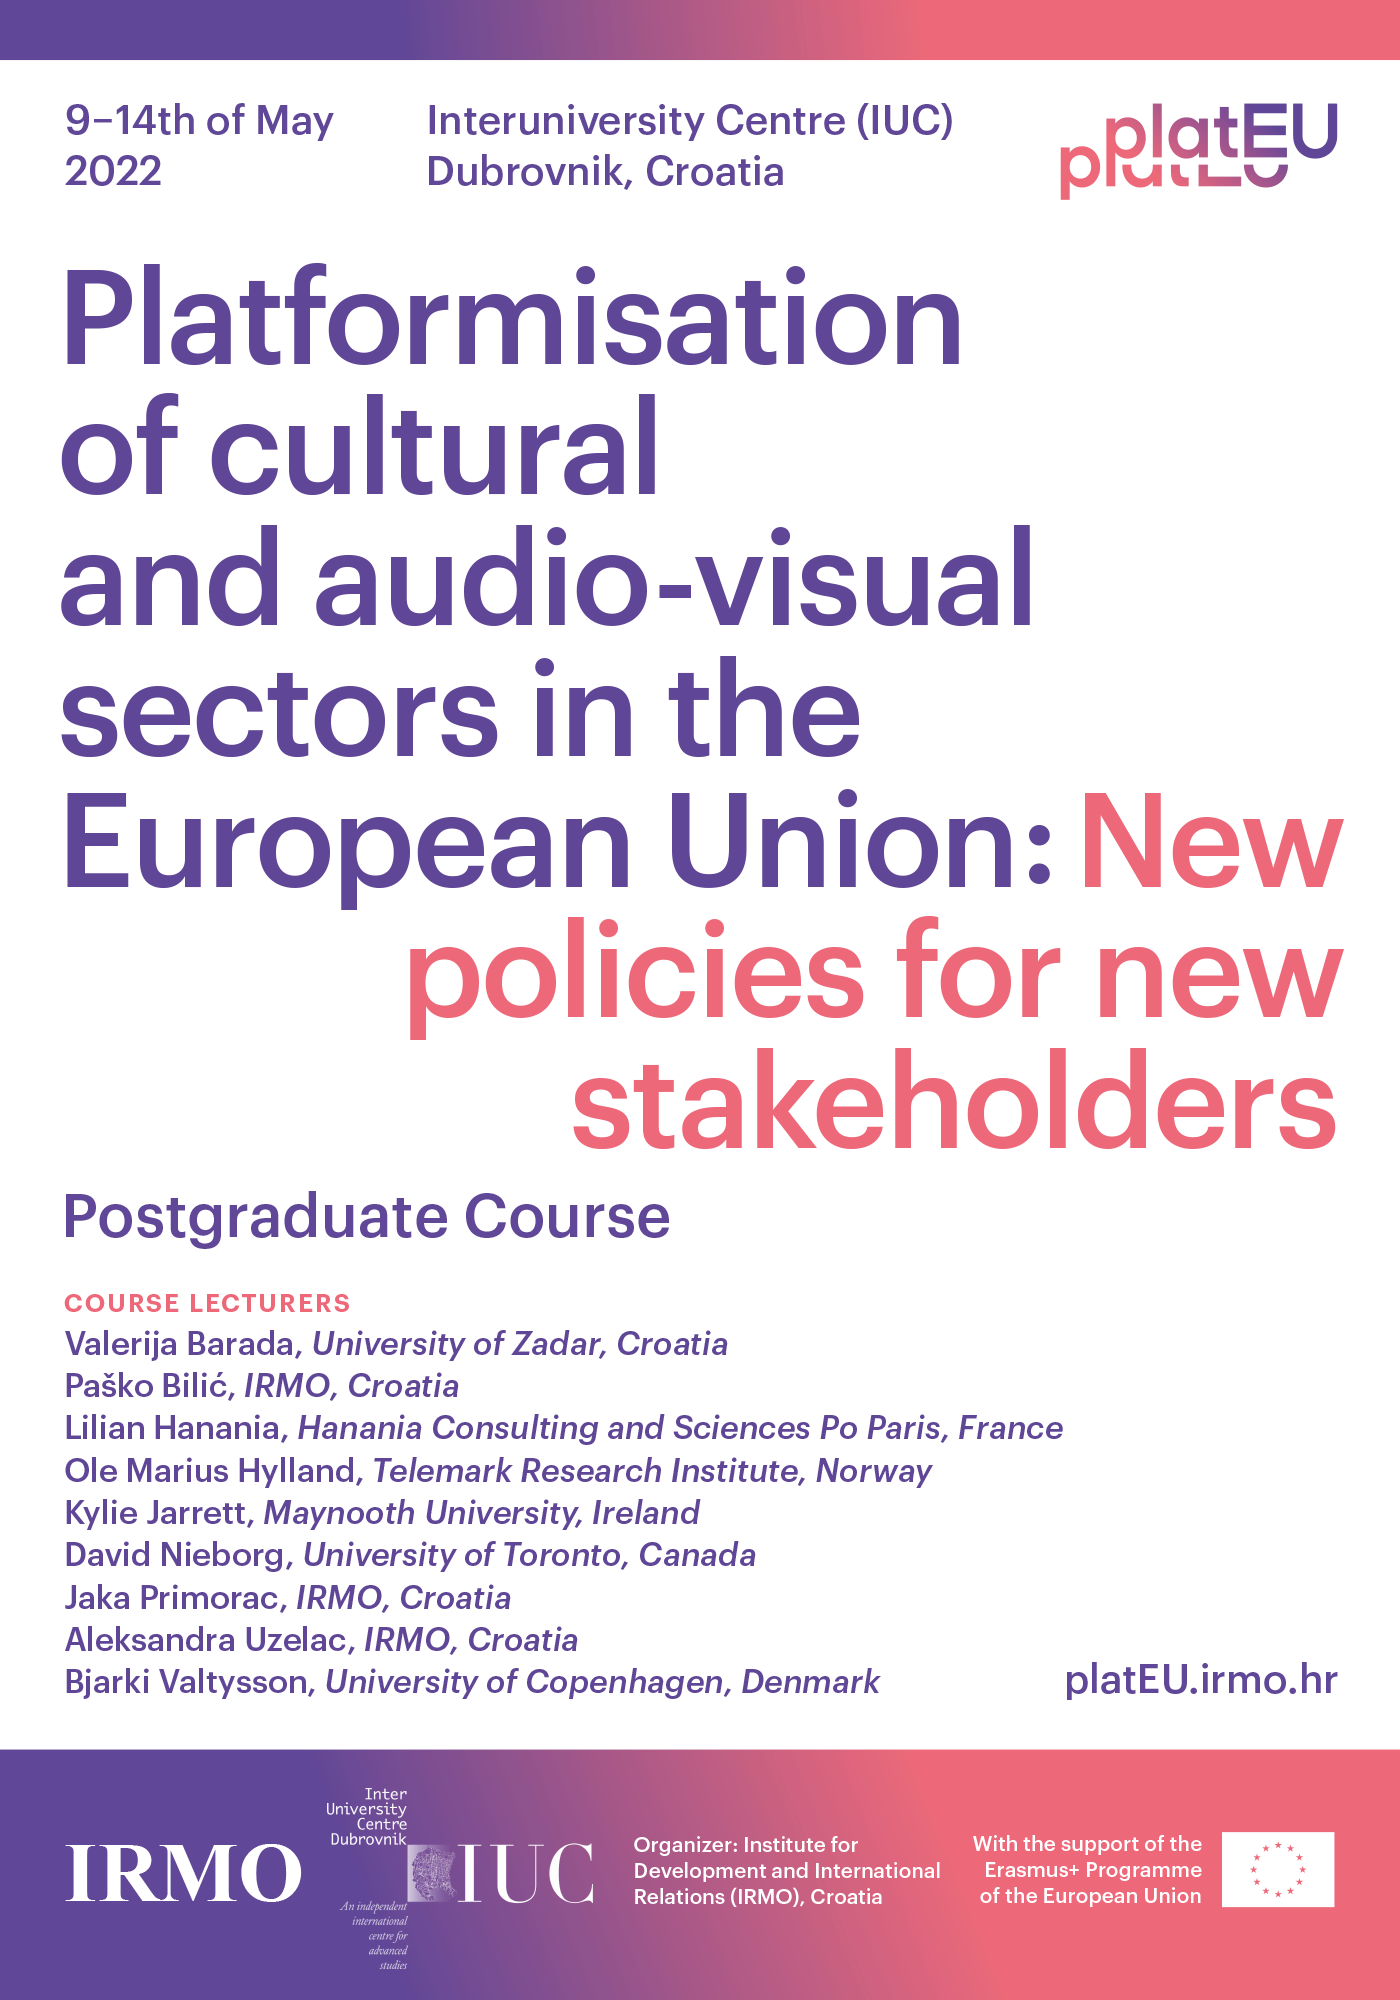 Participación en el curso de posgrado «Platformisation of cultural and audio-visual sectors in the European Union: new policies for new stakeholders»